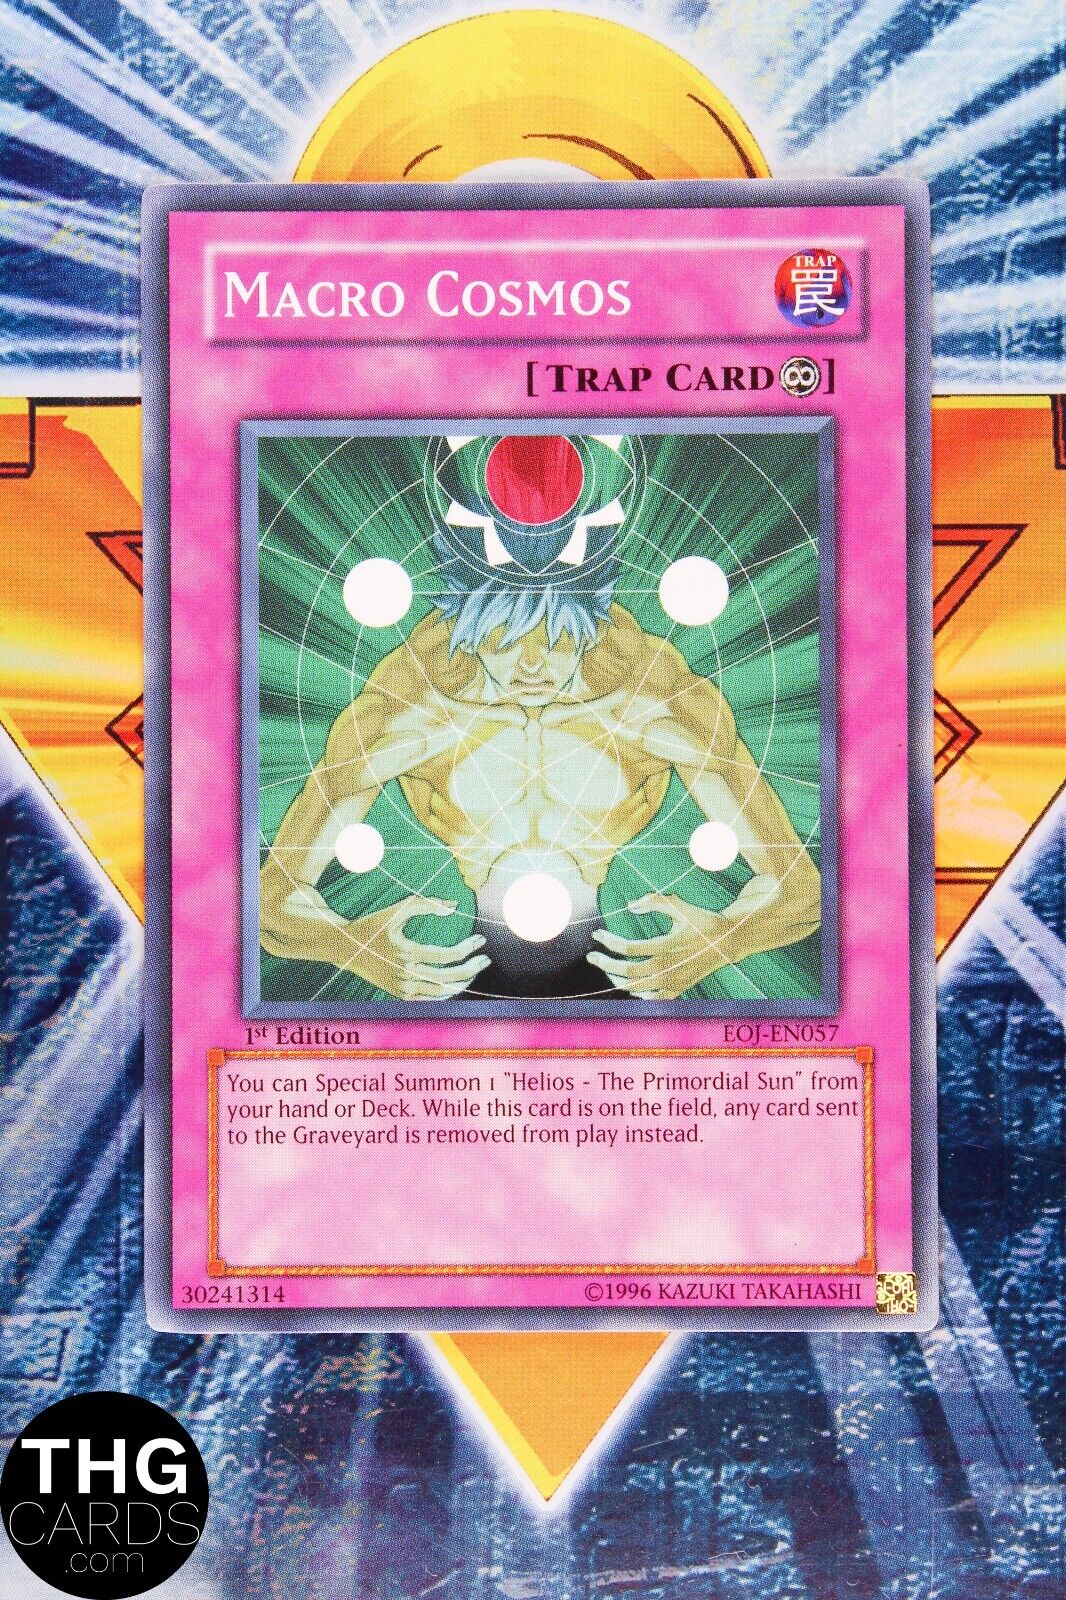 Macro Cosmos EOJ-EN057 1st Edition Common Yugioh Card